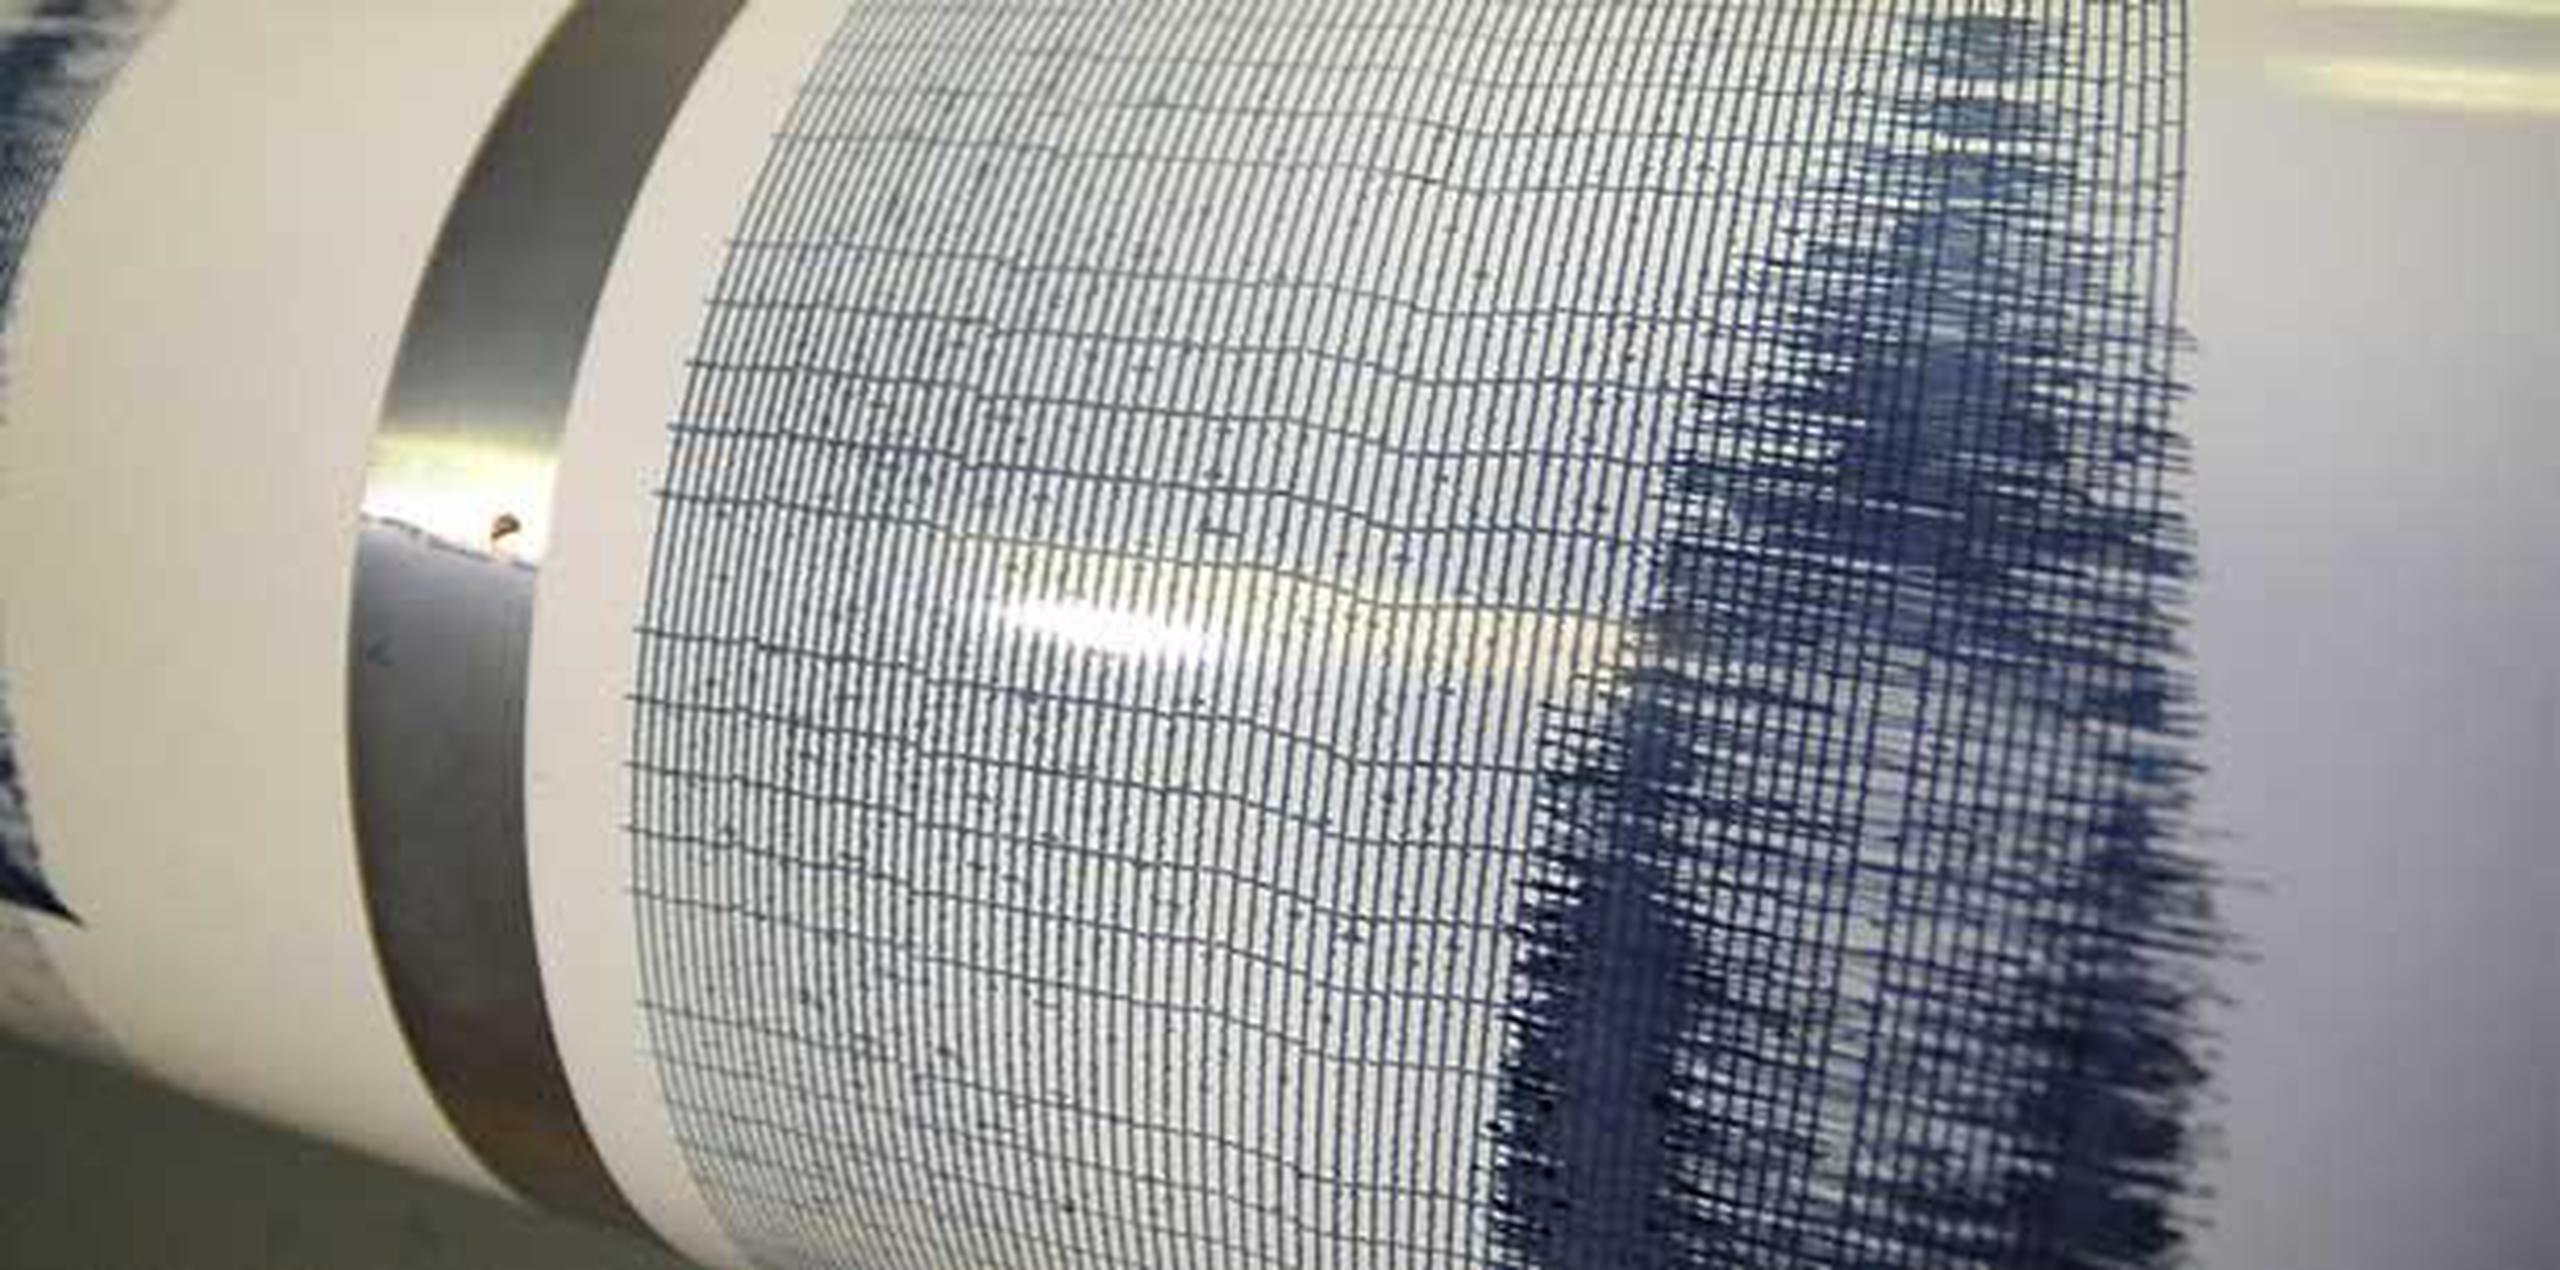 El temblor se registró a 24.48 kilómetros al norte noreste de Arecibo con 41 kilómetros de profundidad. (Archivo)
